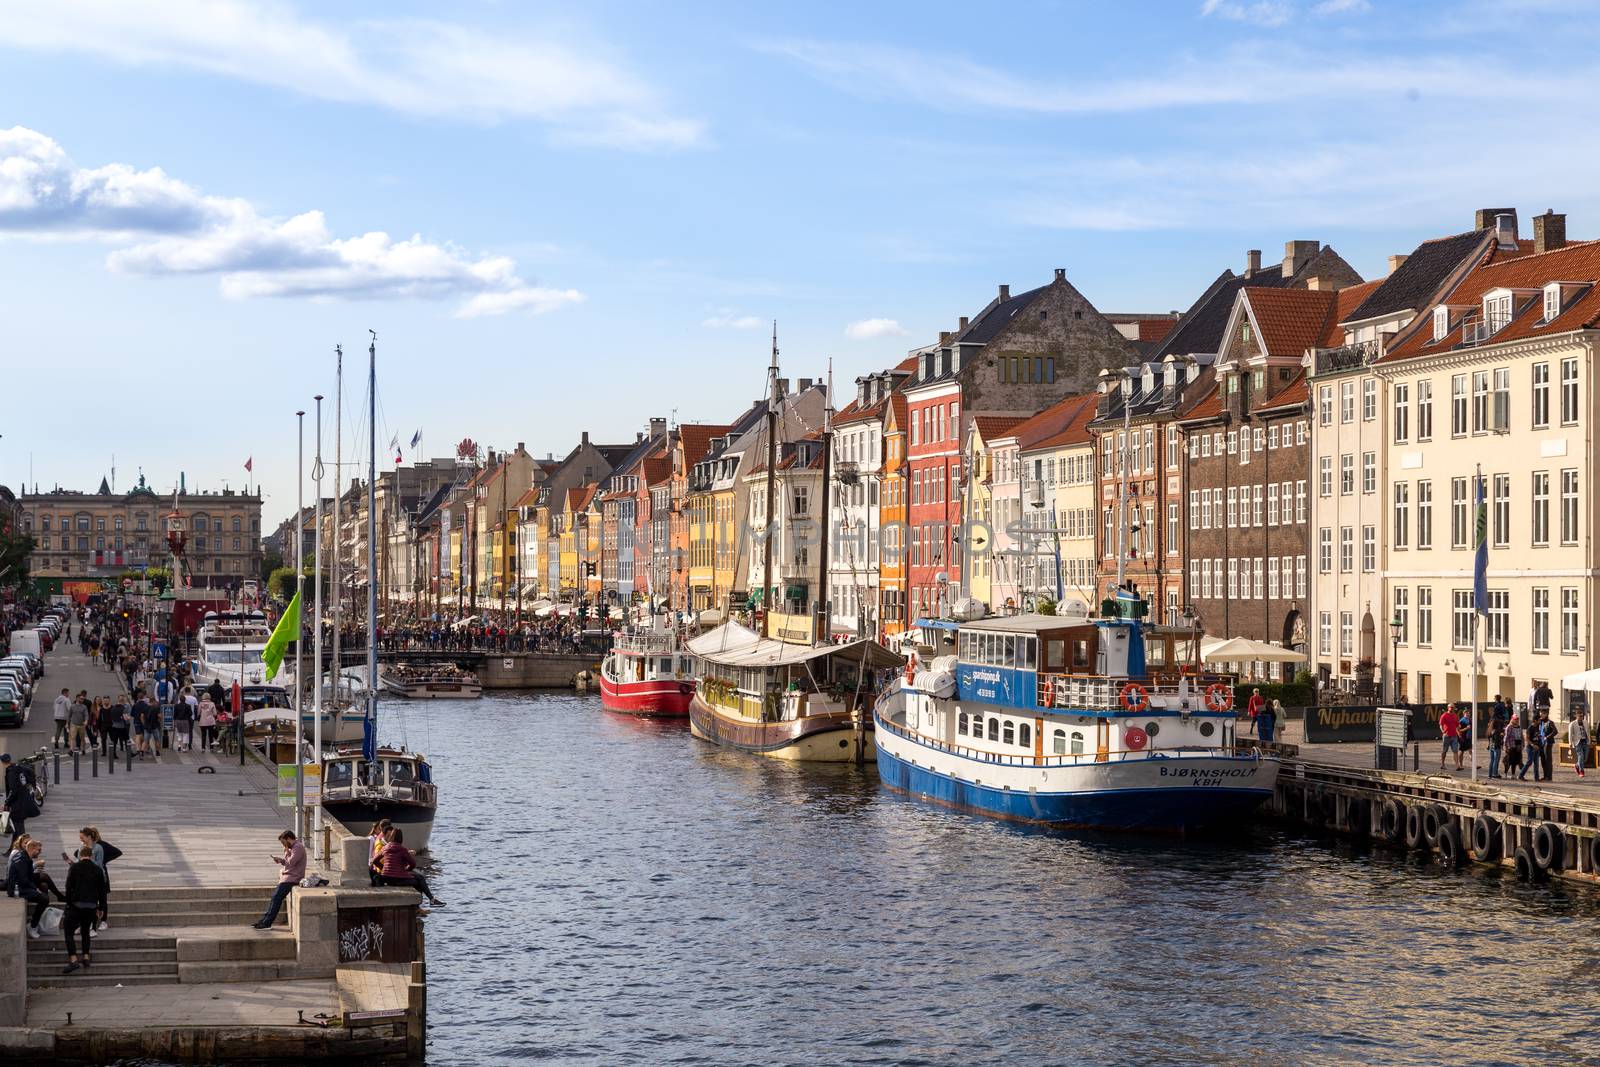 Nyhavn harbor in Copenhagen, Denmark by oliverfoerstner